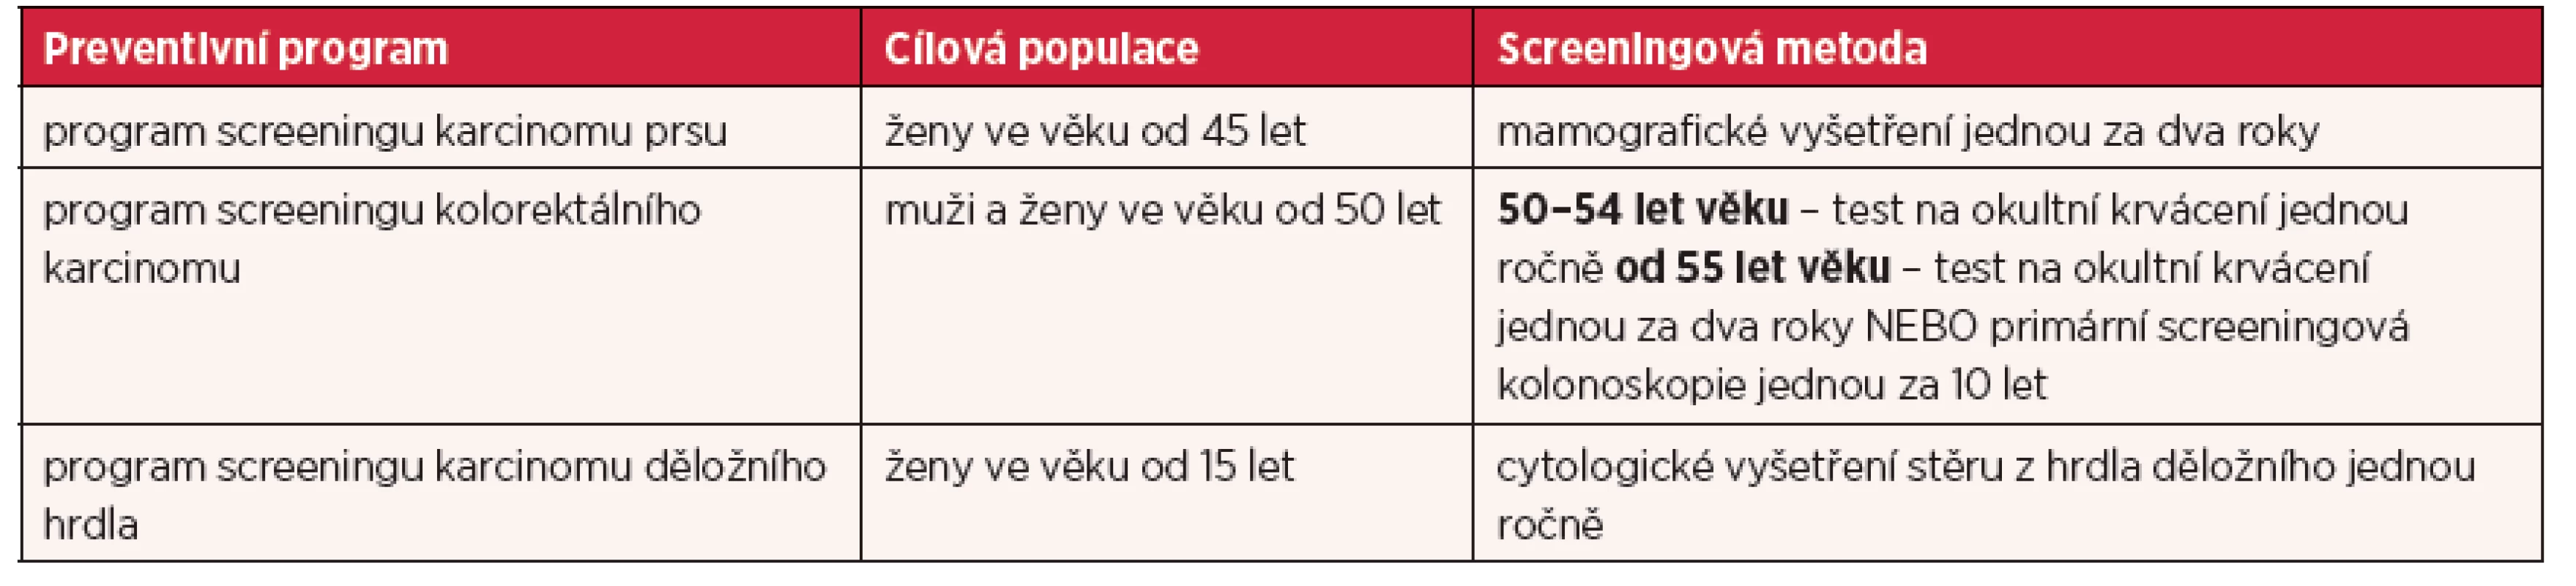 Programy pro screening nádorových onemocnění dle doporučení Rady EU a jejich dostupnost v České republice 